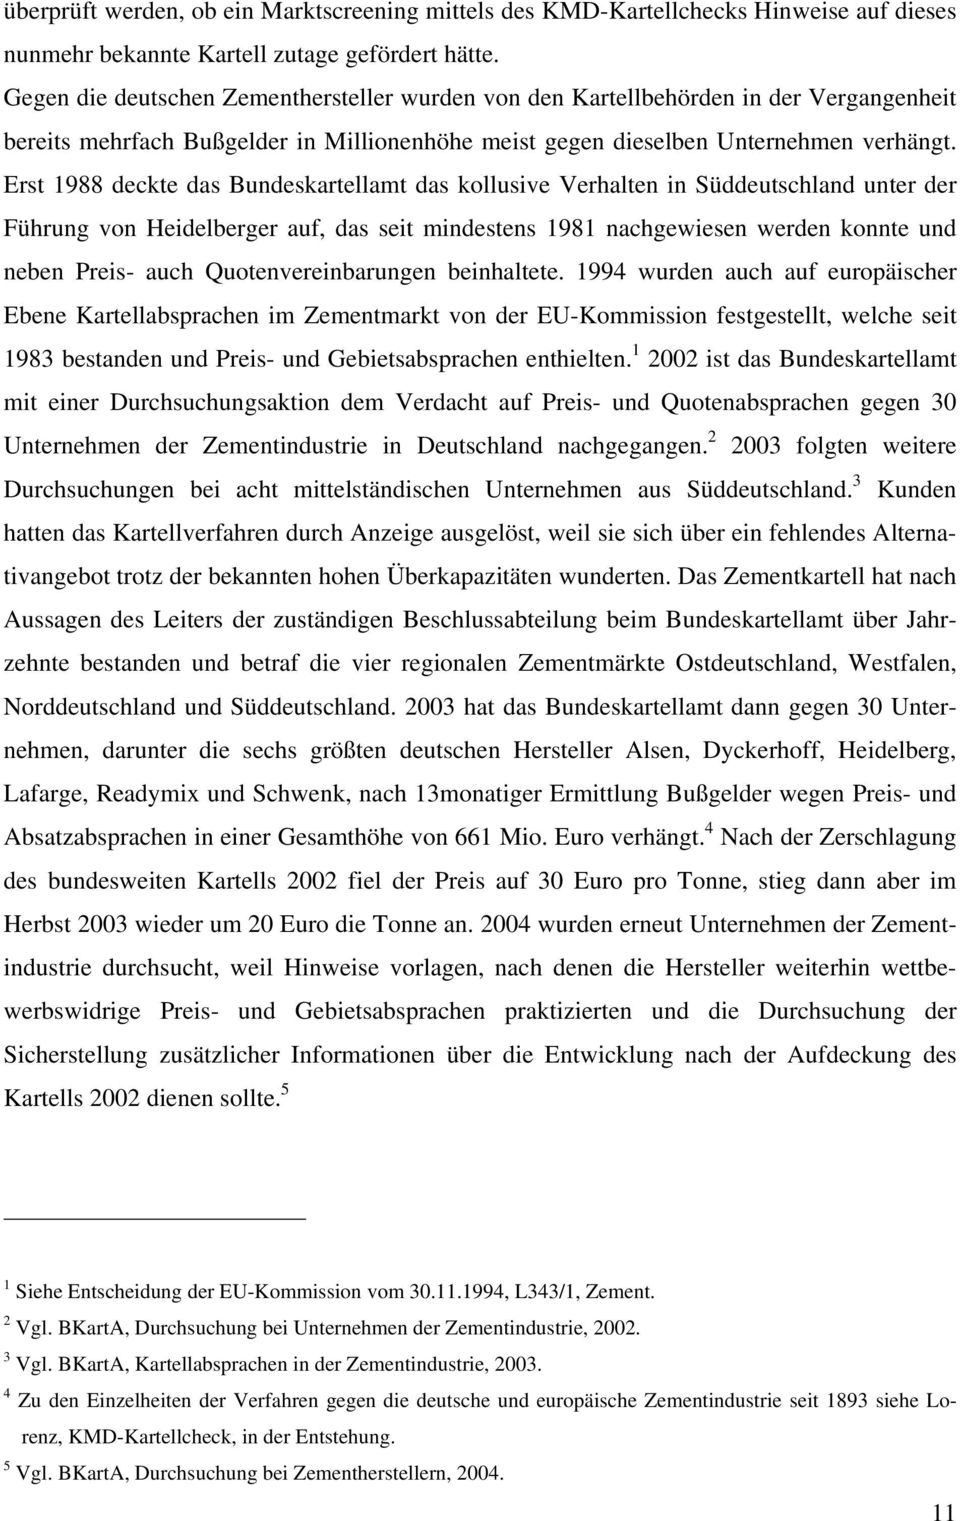 Erst 1988 deckte das Bundeskartellamt das kollusive Verhalten in Süddeutschland unter der Führung von Heidelberger auf, das seit mindestens 1981 nachgewiesen werden konnte und neben Preis- auch